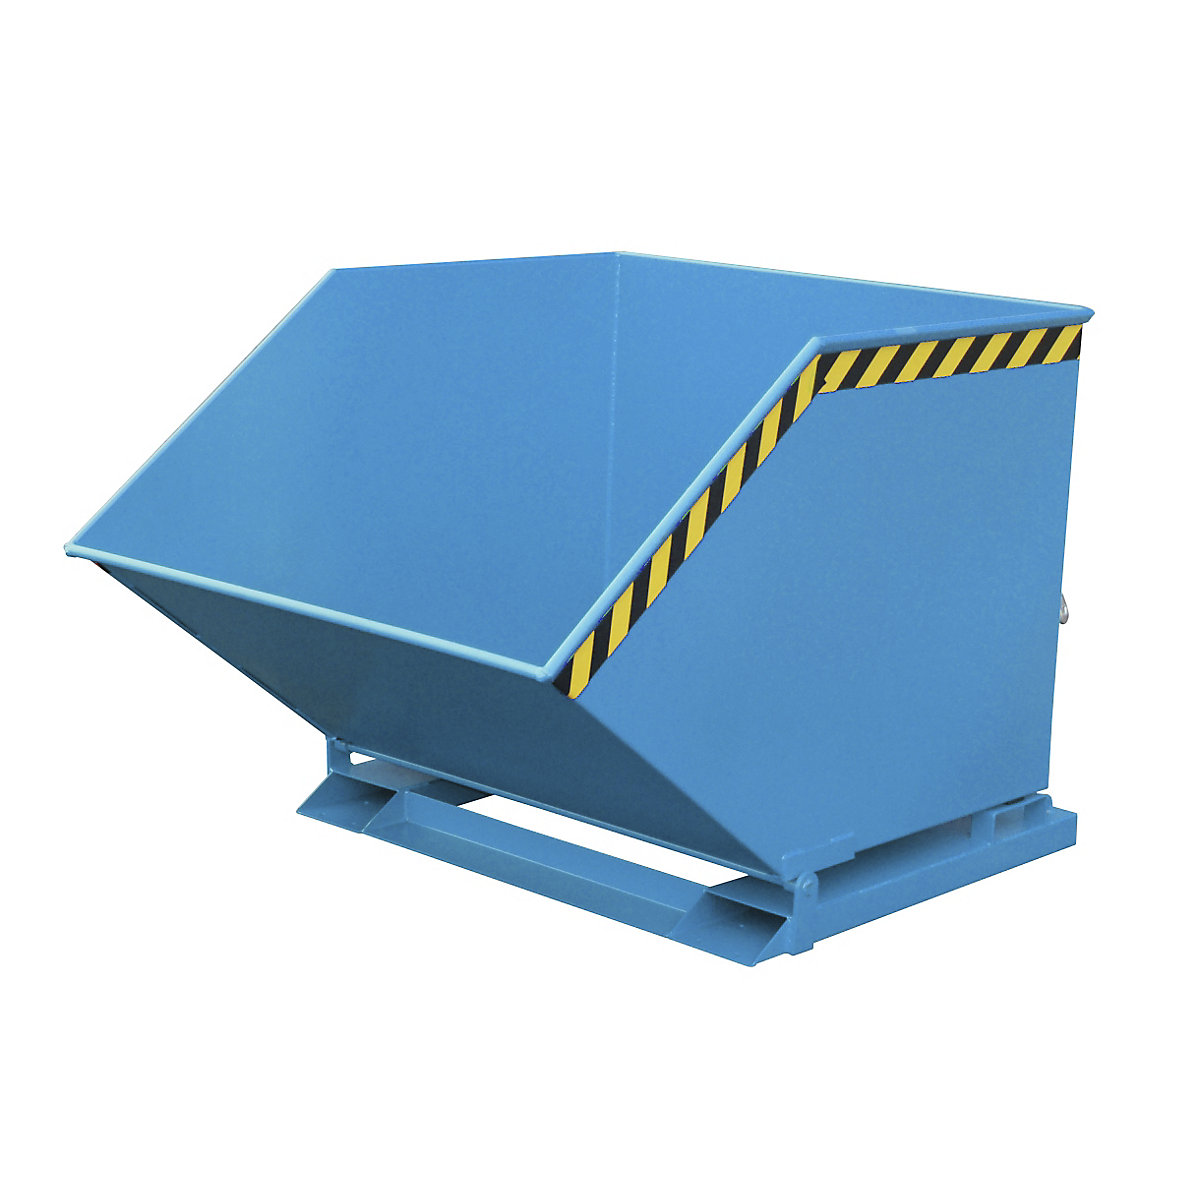 Cavidade de basculação com mecanismo basculante – eurokraft pro, forma de caixa, volume 1 m³, azul RAL 5012-6